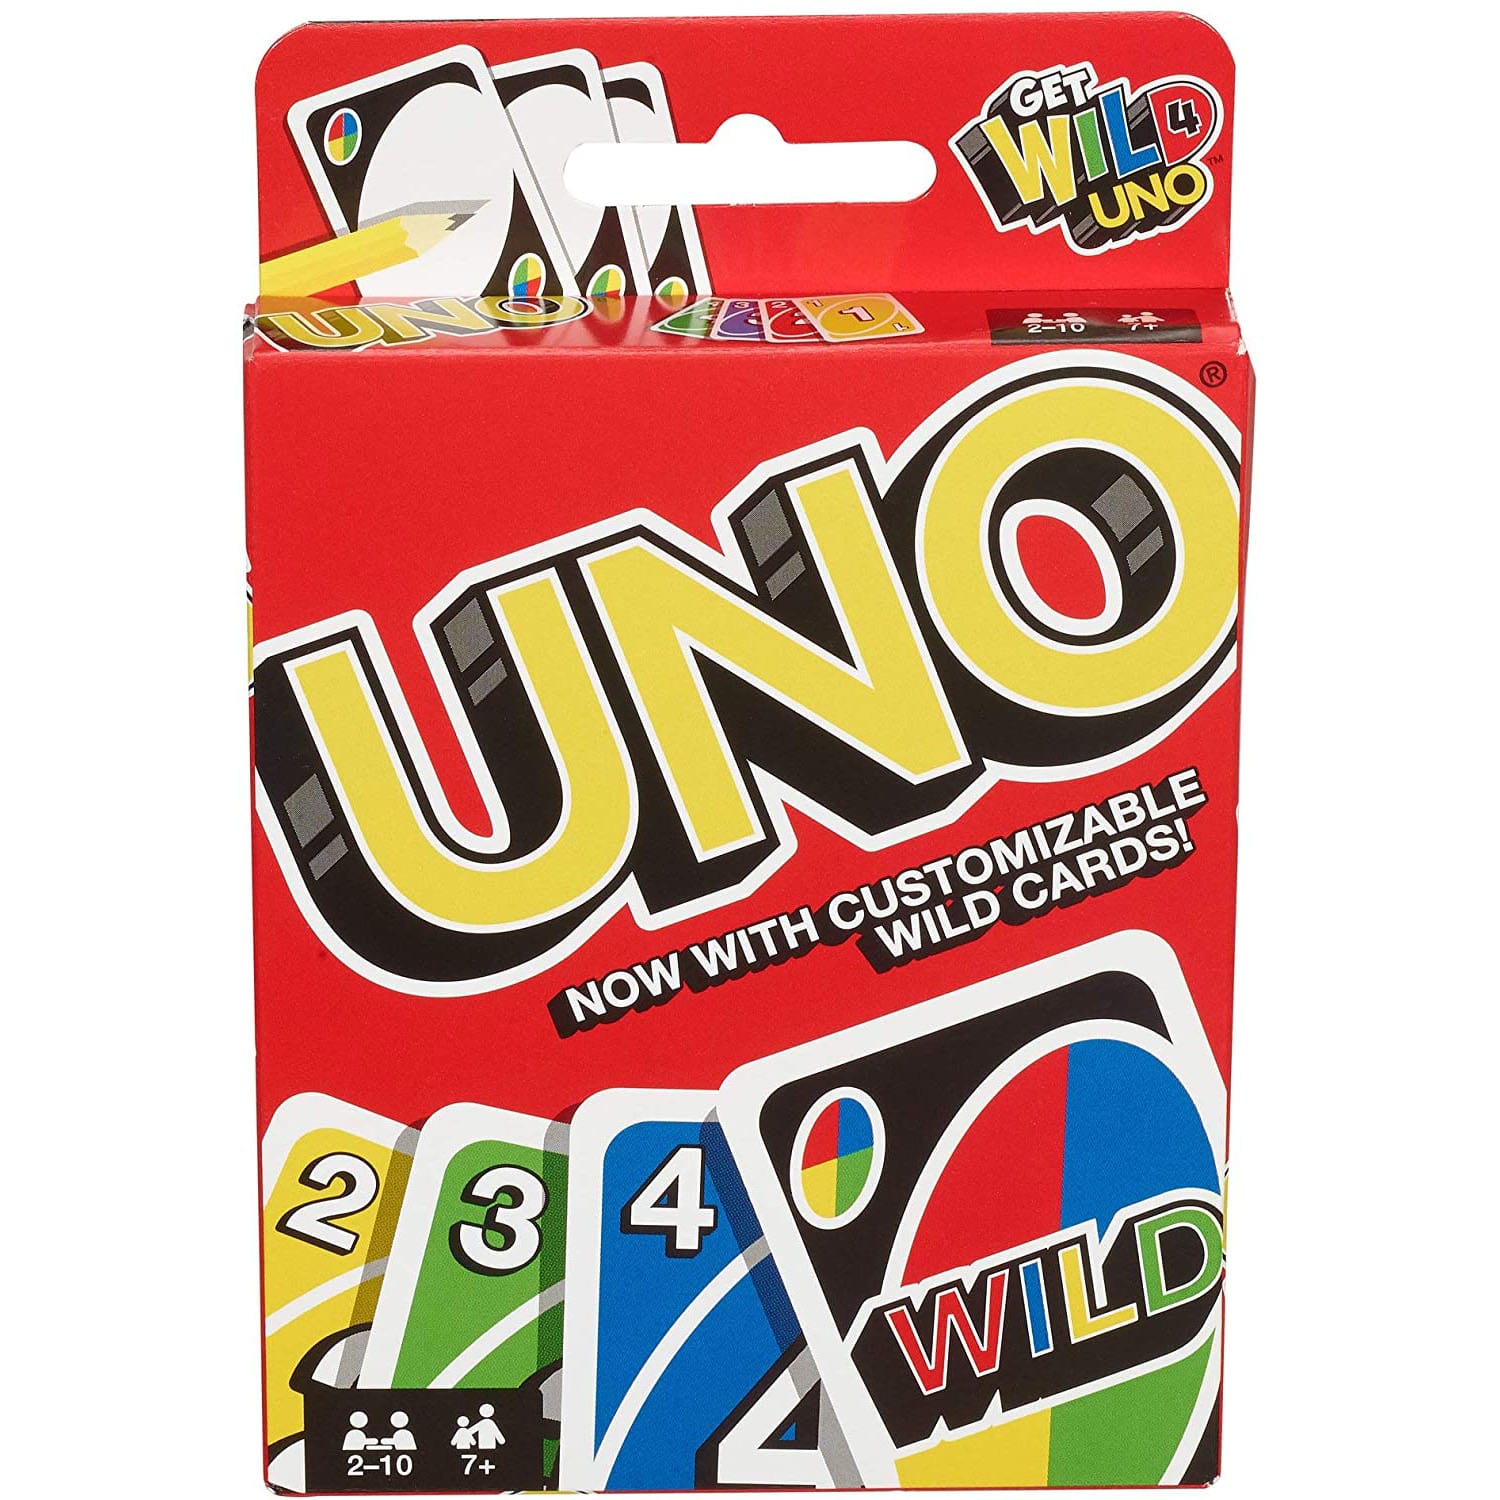 UNO-Get Wild Edition